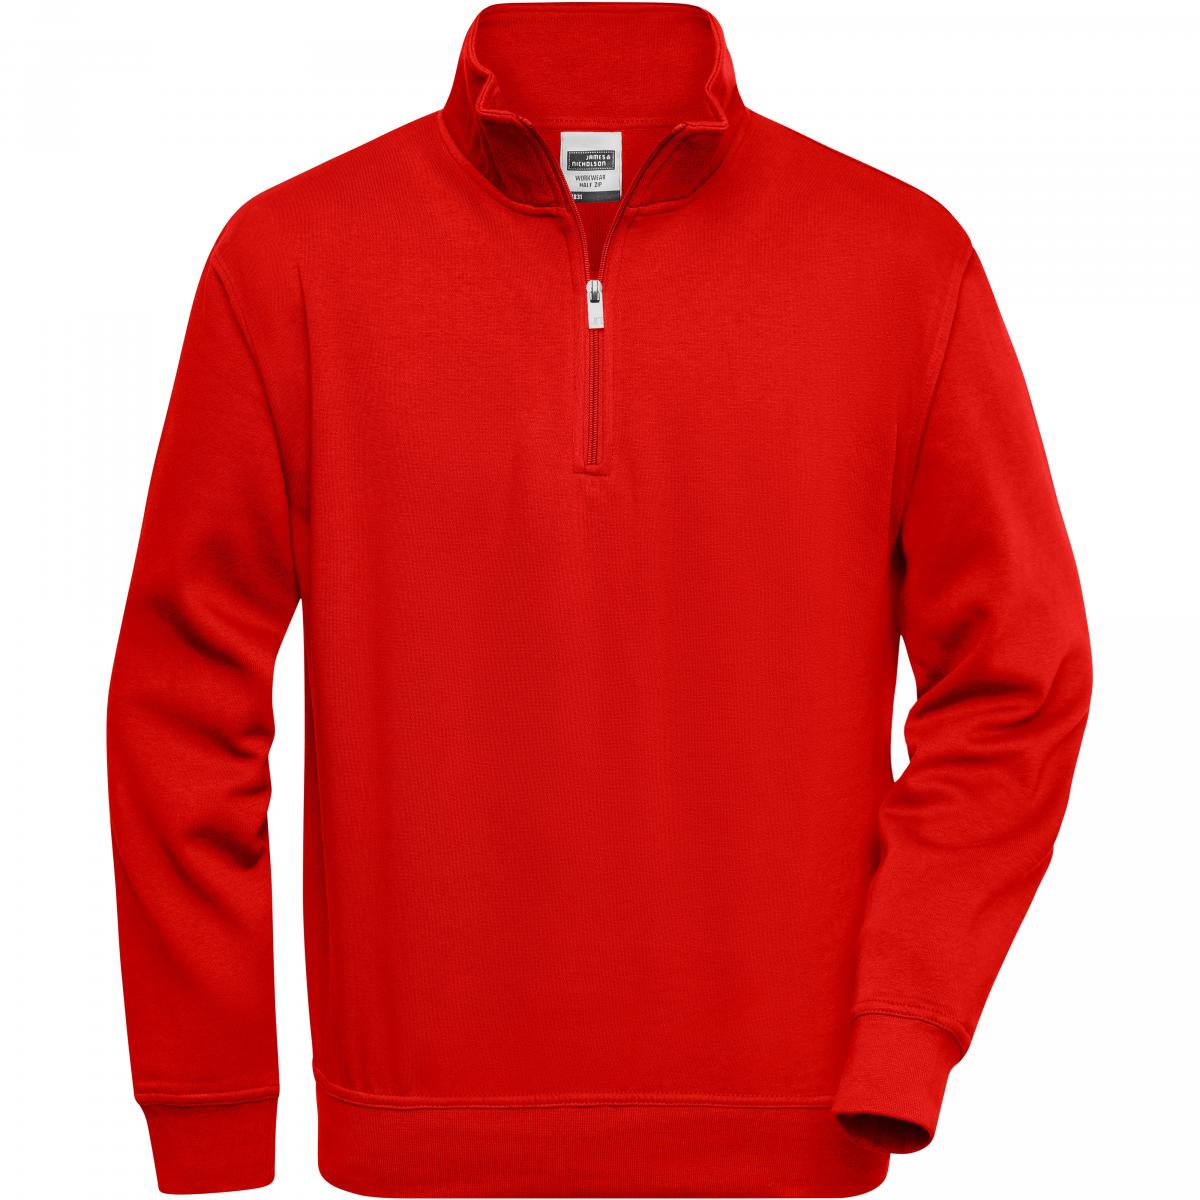 Hersteller: James+Nicholson Herstellernummer: JN831 Artikelbezeichnung: Workwear Half Zip Sweatshirt +Waschbar bis 60 °C Farbe: Red